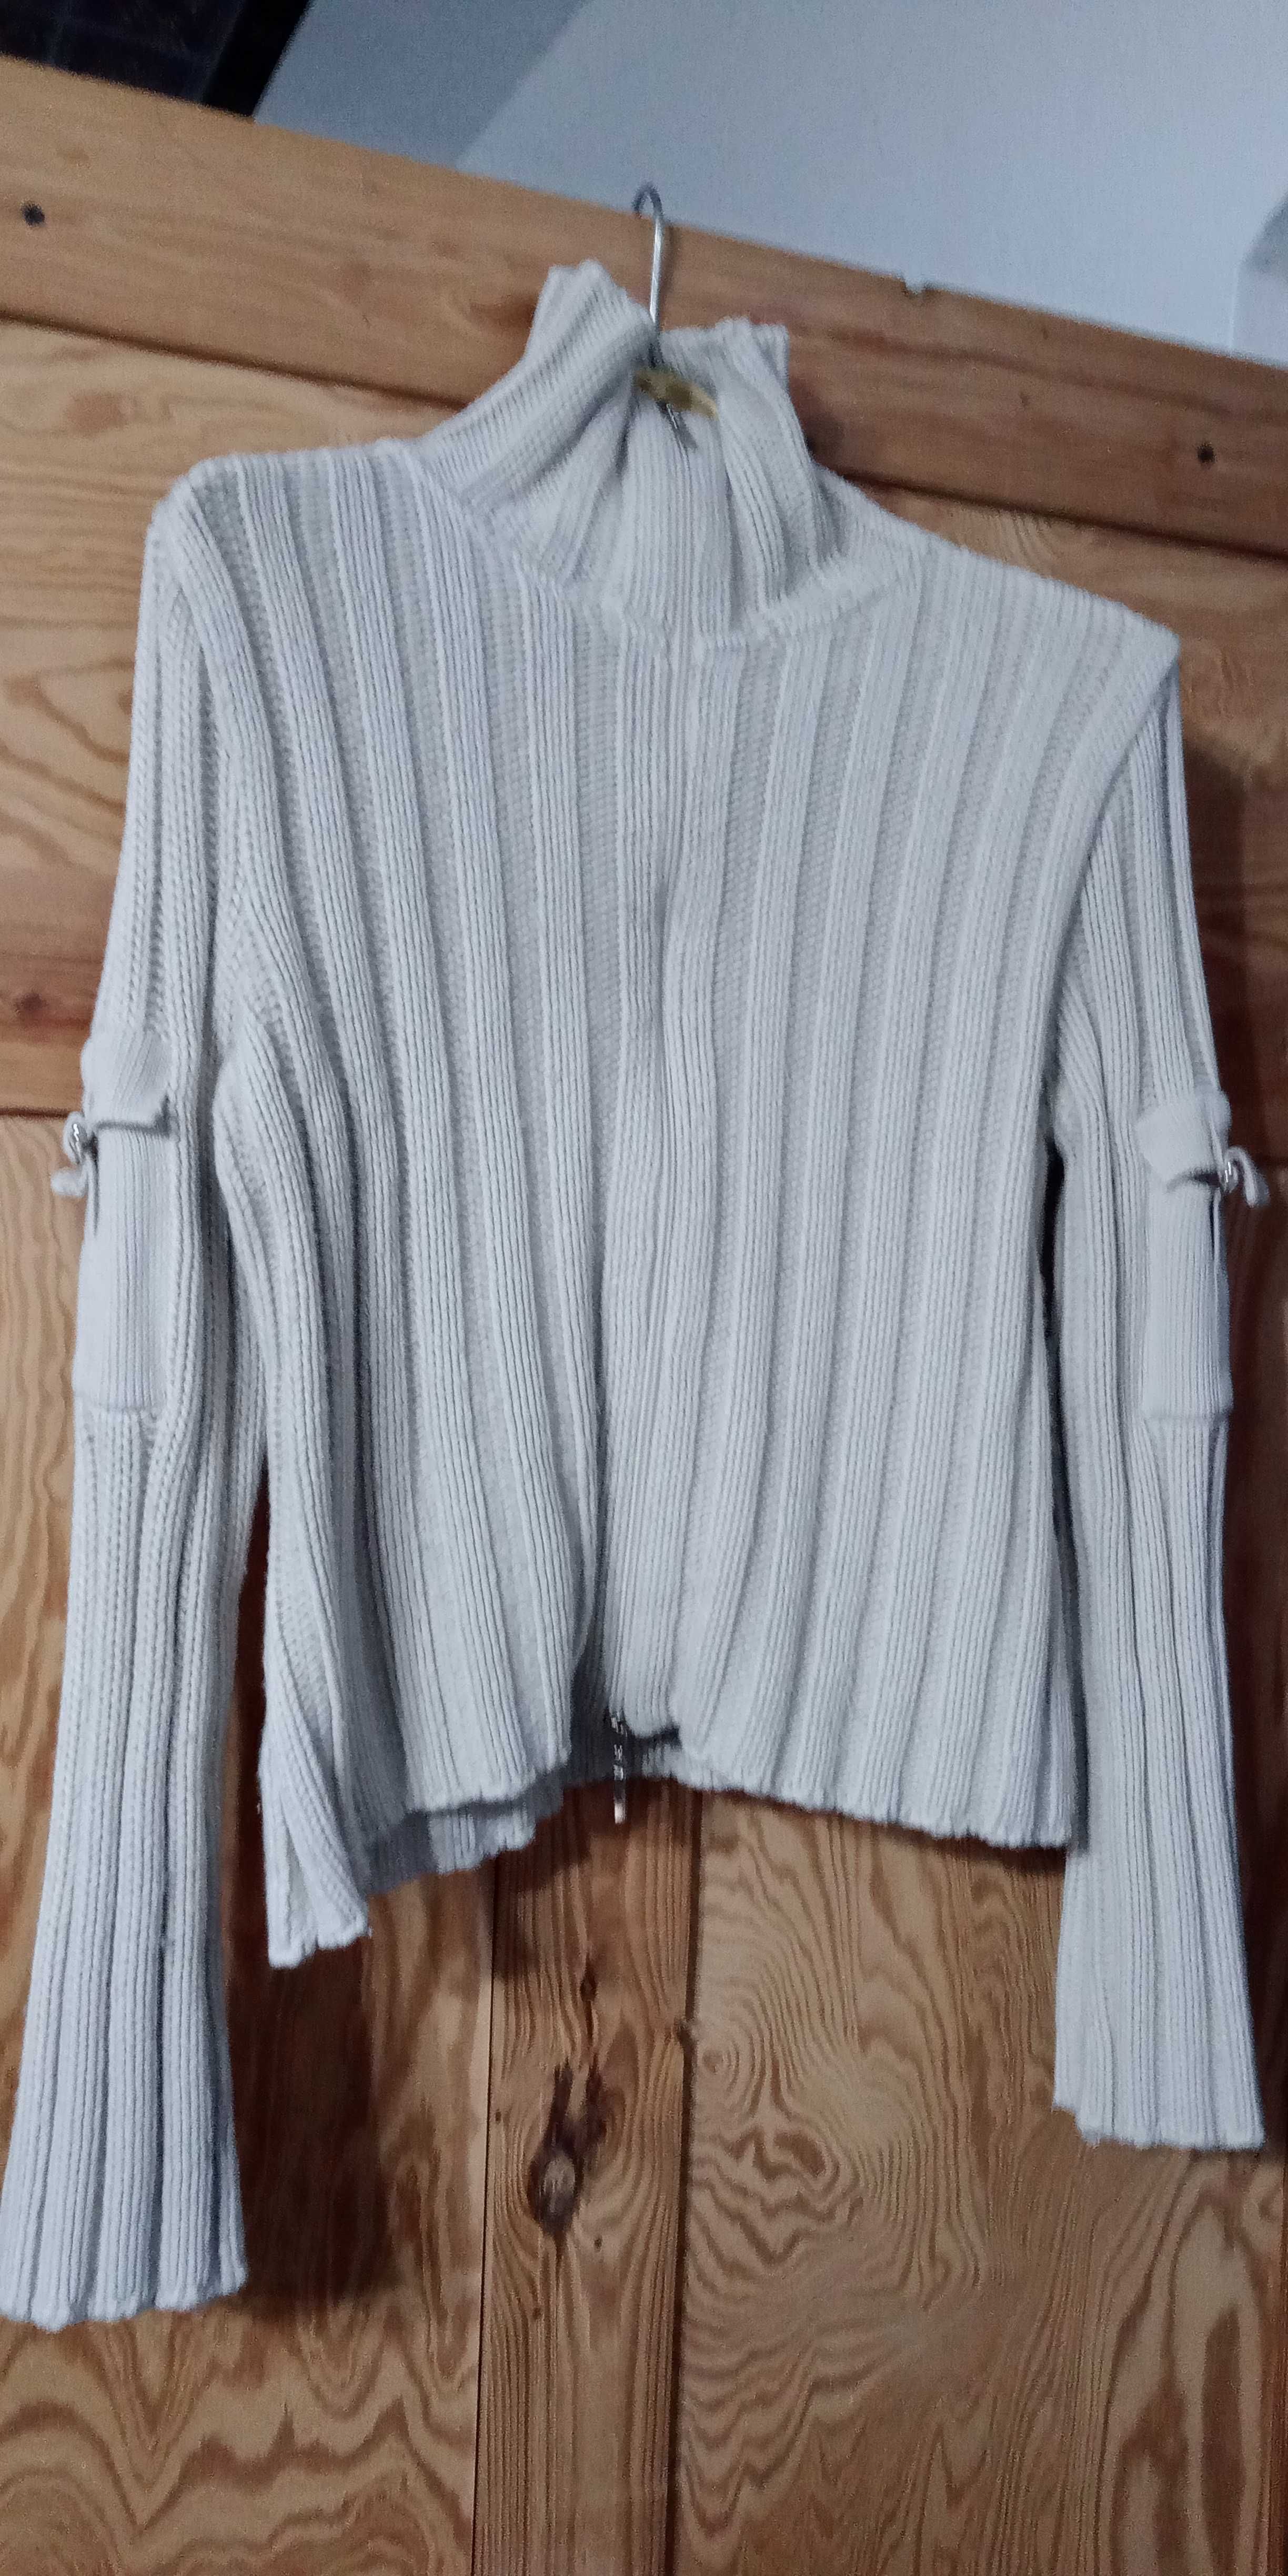 Damski Sweter Rozpinany z kieszonkami na rękawach